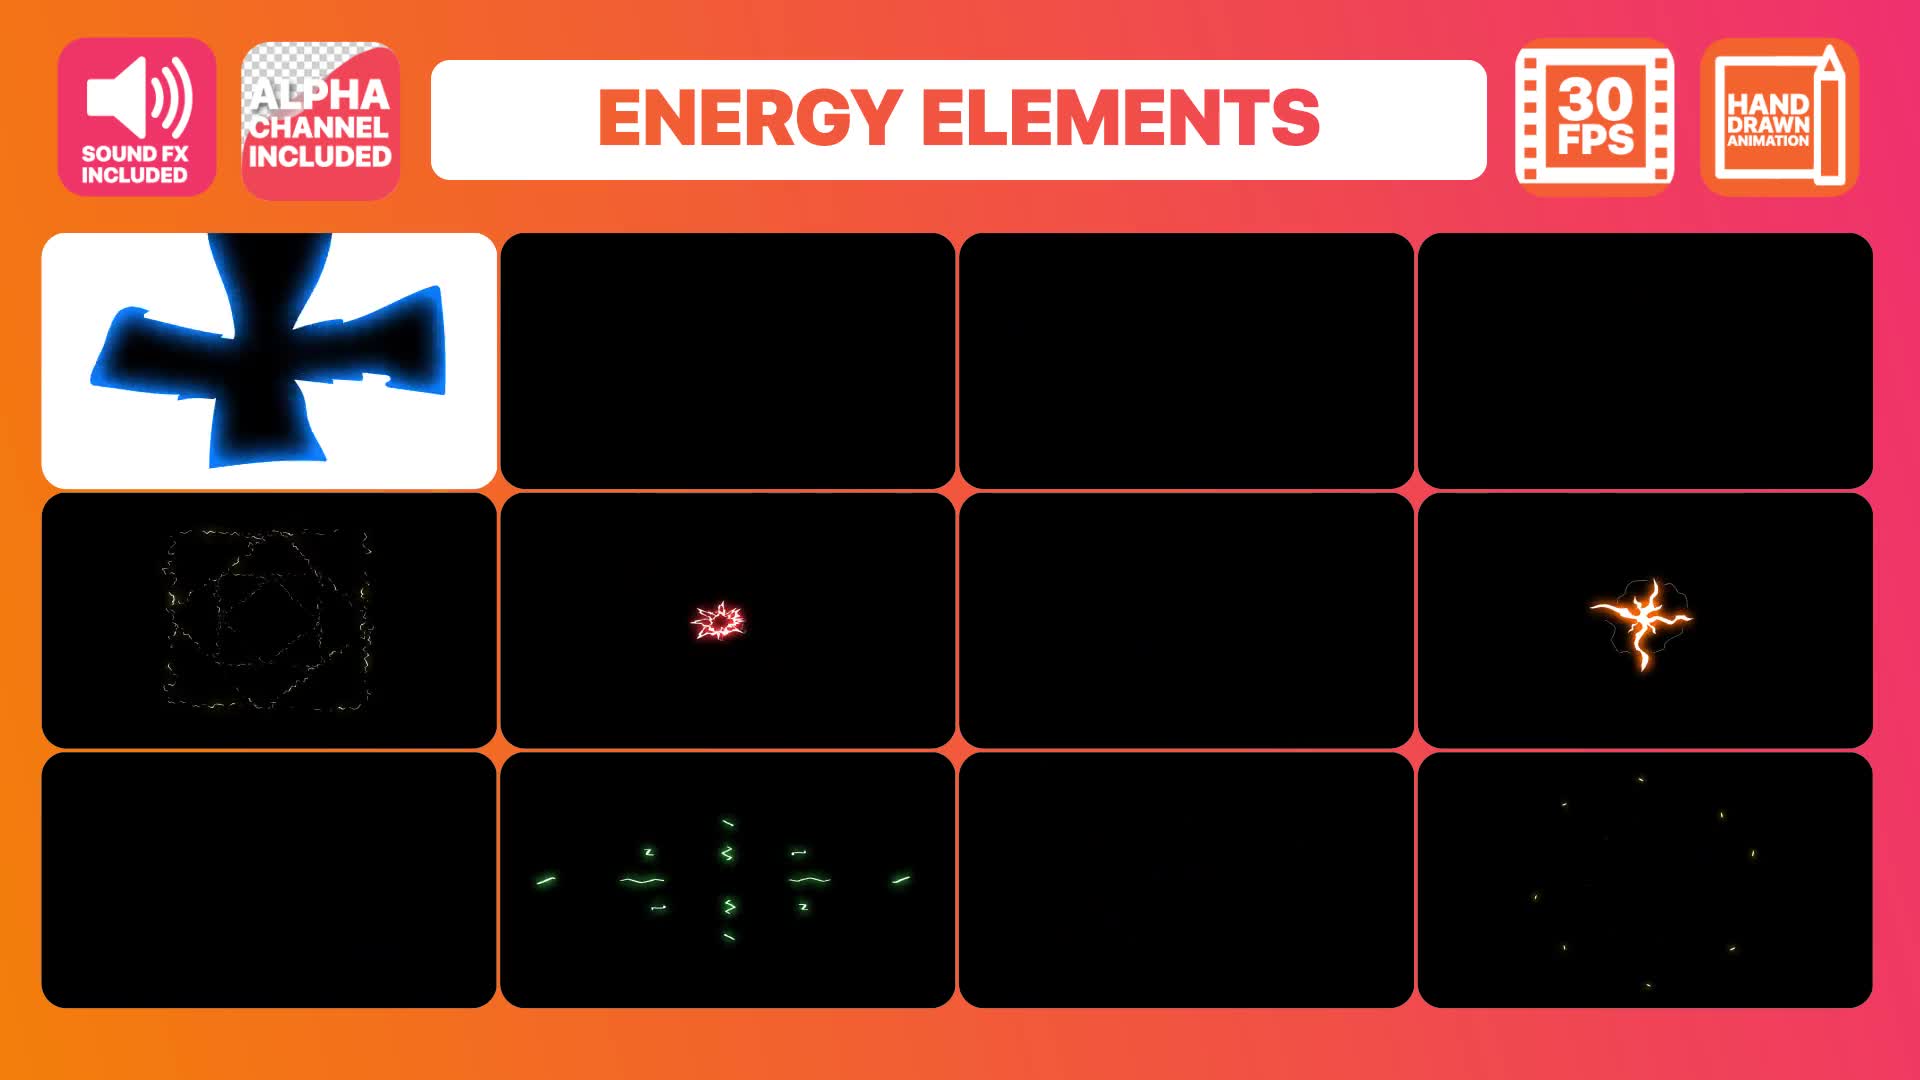 Electric Energy Elements | Premiere Pro MOGRT Videohive 30942789 Premiere Pro Image 2